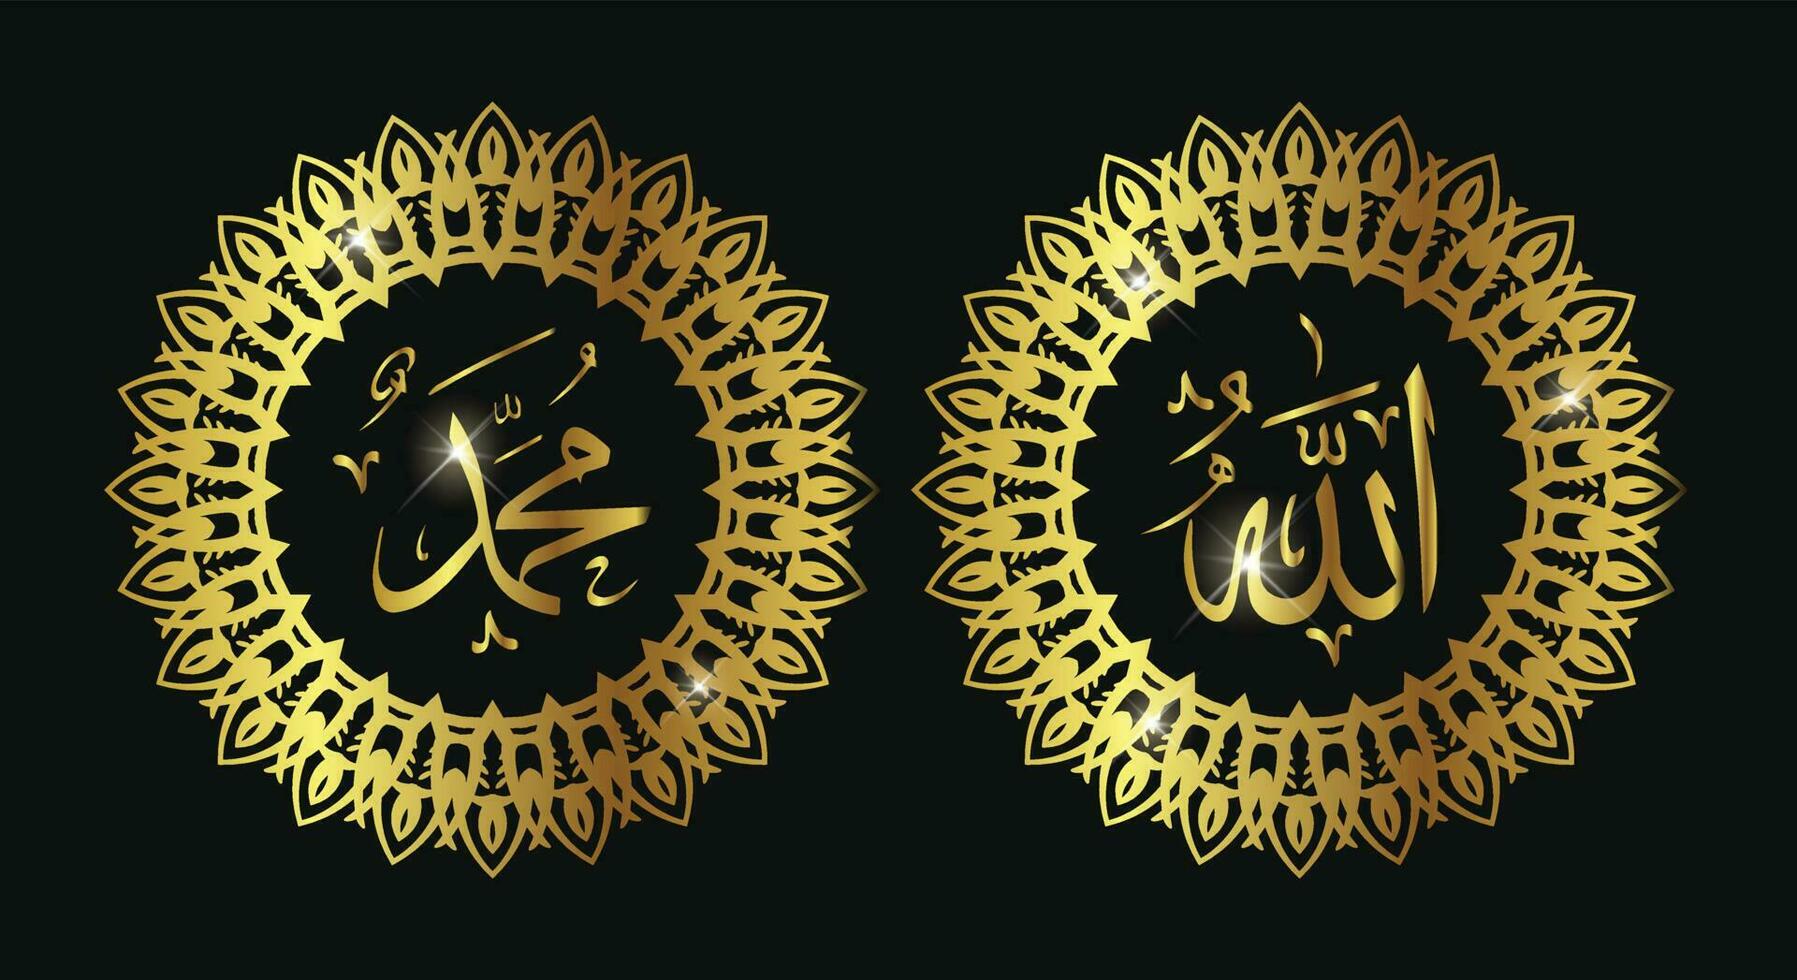 Allah Mohammed Islamitisch Arabisch schoonschrift met ronde kader en goud kleur. geschikt voor moskee decor, huis decor en voor Islamitisch ontwerp project. vector